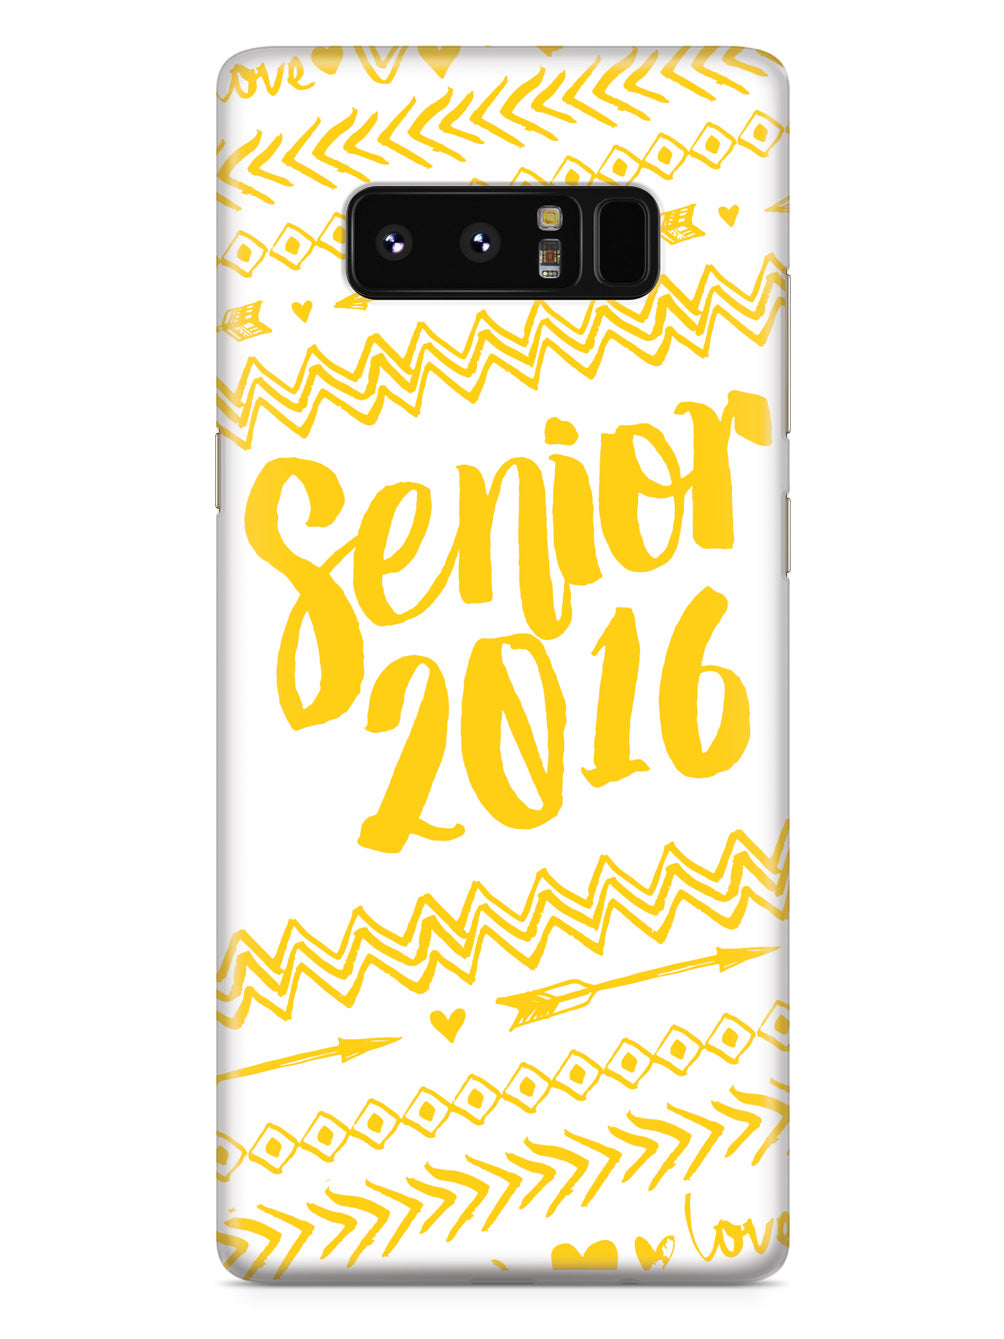 Senior 2016 - Yellow Case